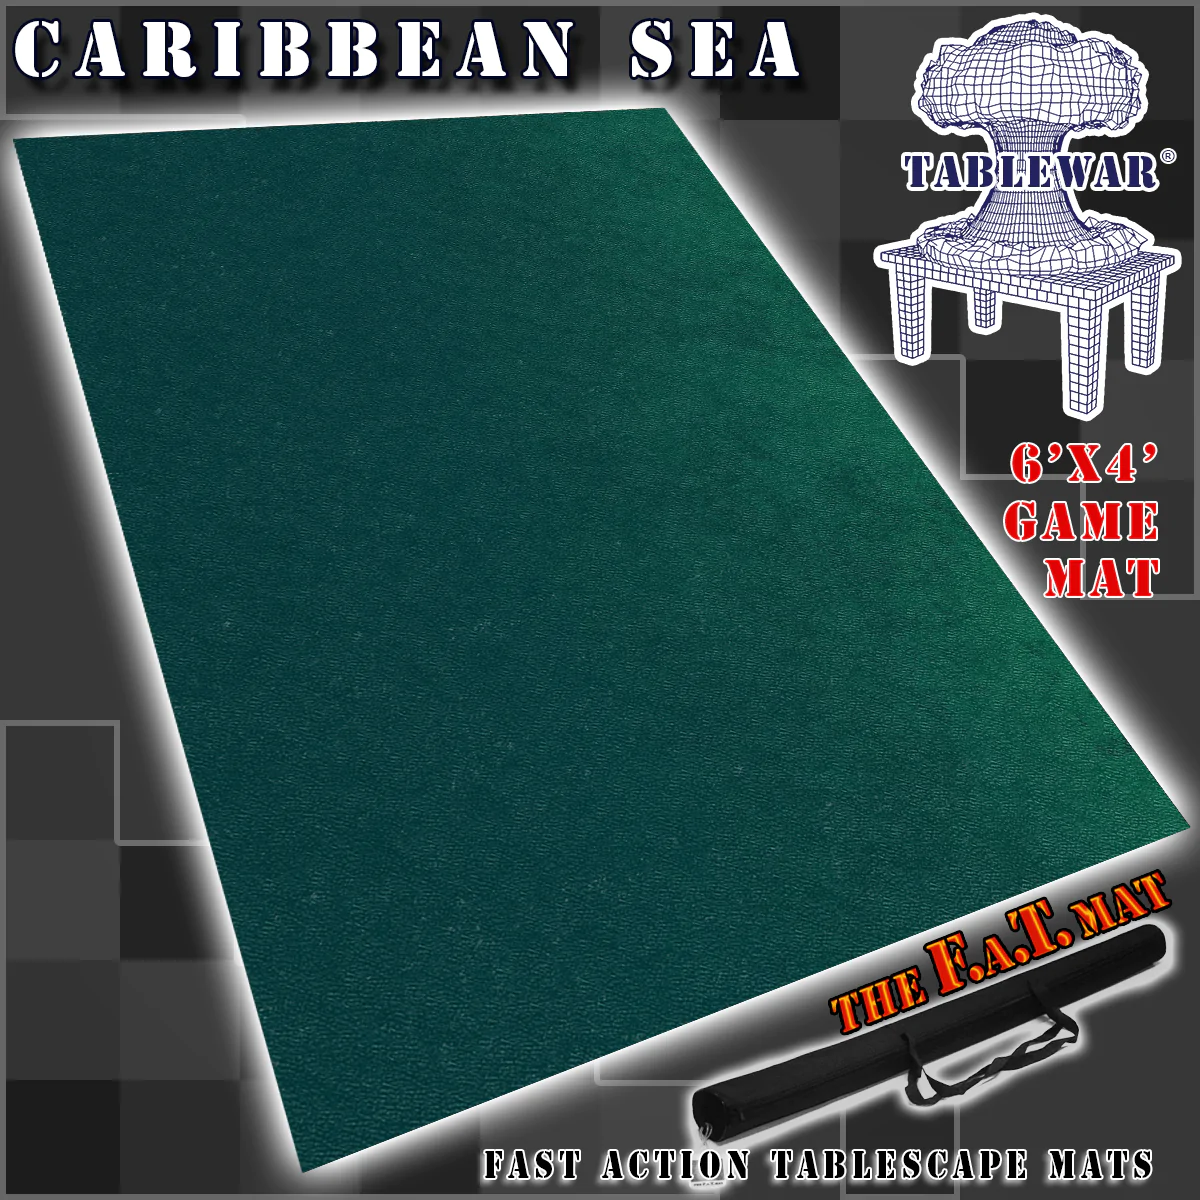 F.A.T. MATS: CARIBBEAN SEA 6X4